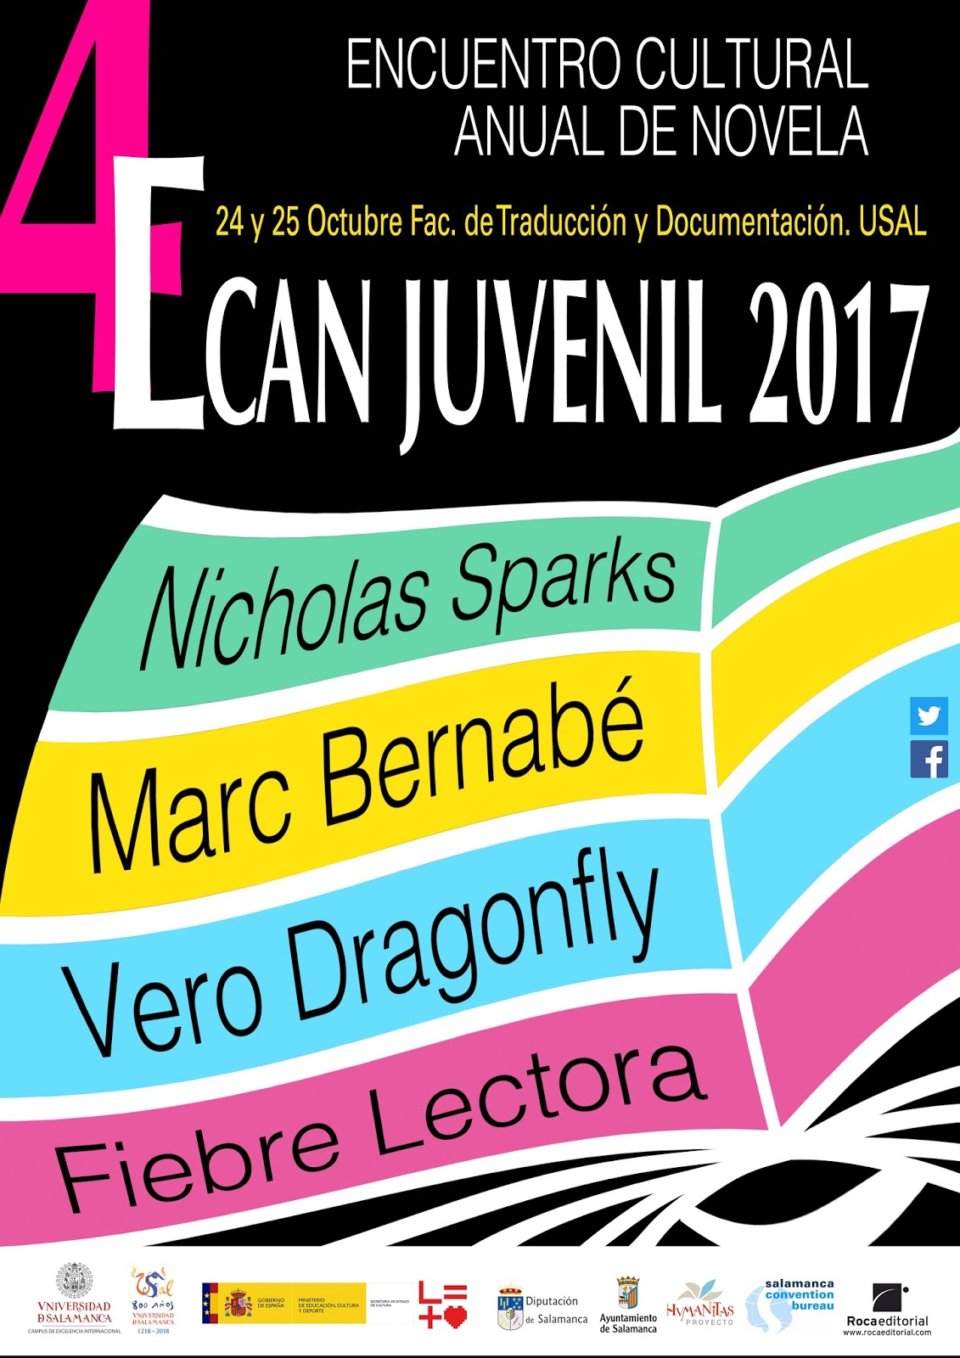 IV Encuentro Cultural Anual de Novela Juvenil ECAN Juvenil 2017 Salamanca Octubre